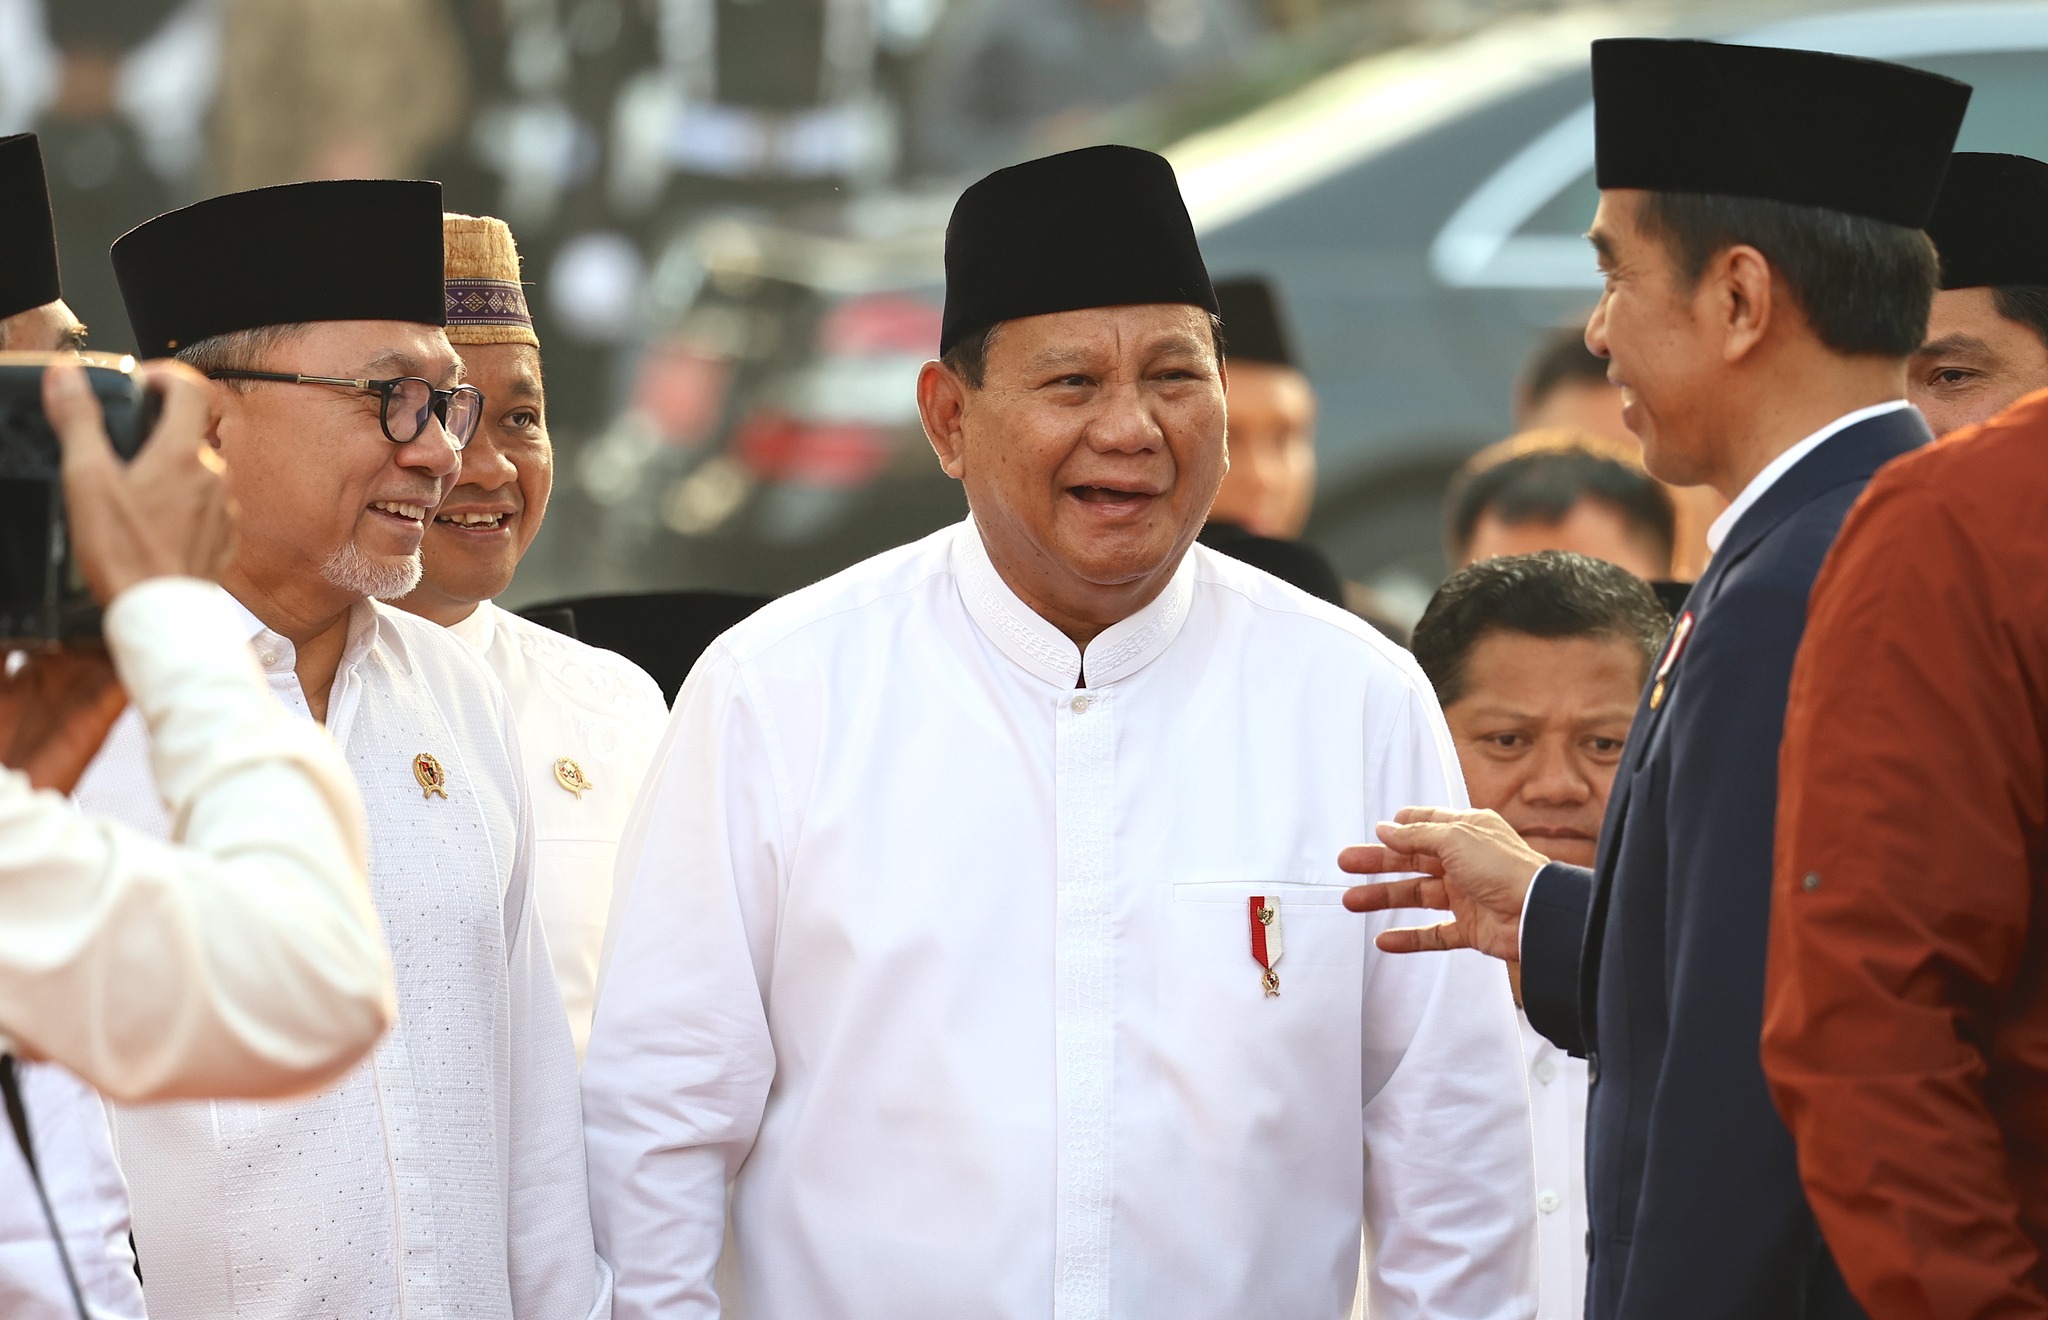 MK Bakal Putuskan Usia Capres 70 Tahun Hari Ini, Prabowo Berpotensi Terganjal, Henri Subiakto: Ini Ujian Konsistensi Hakim MK